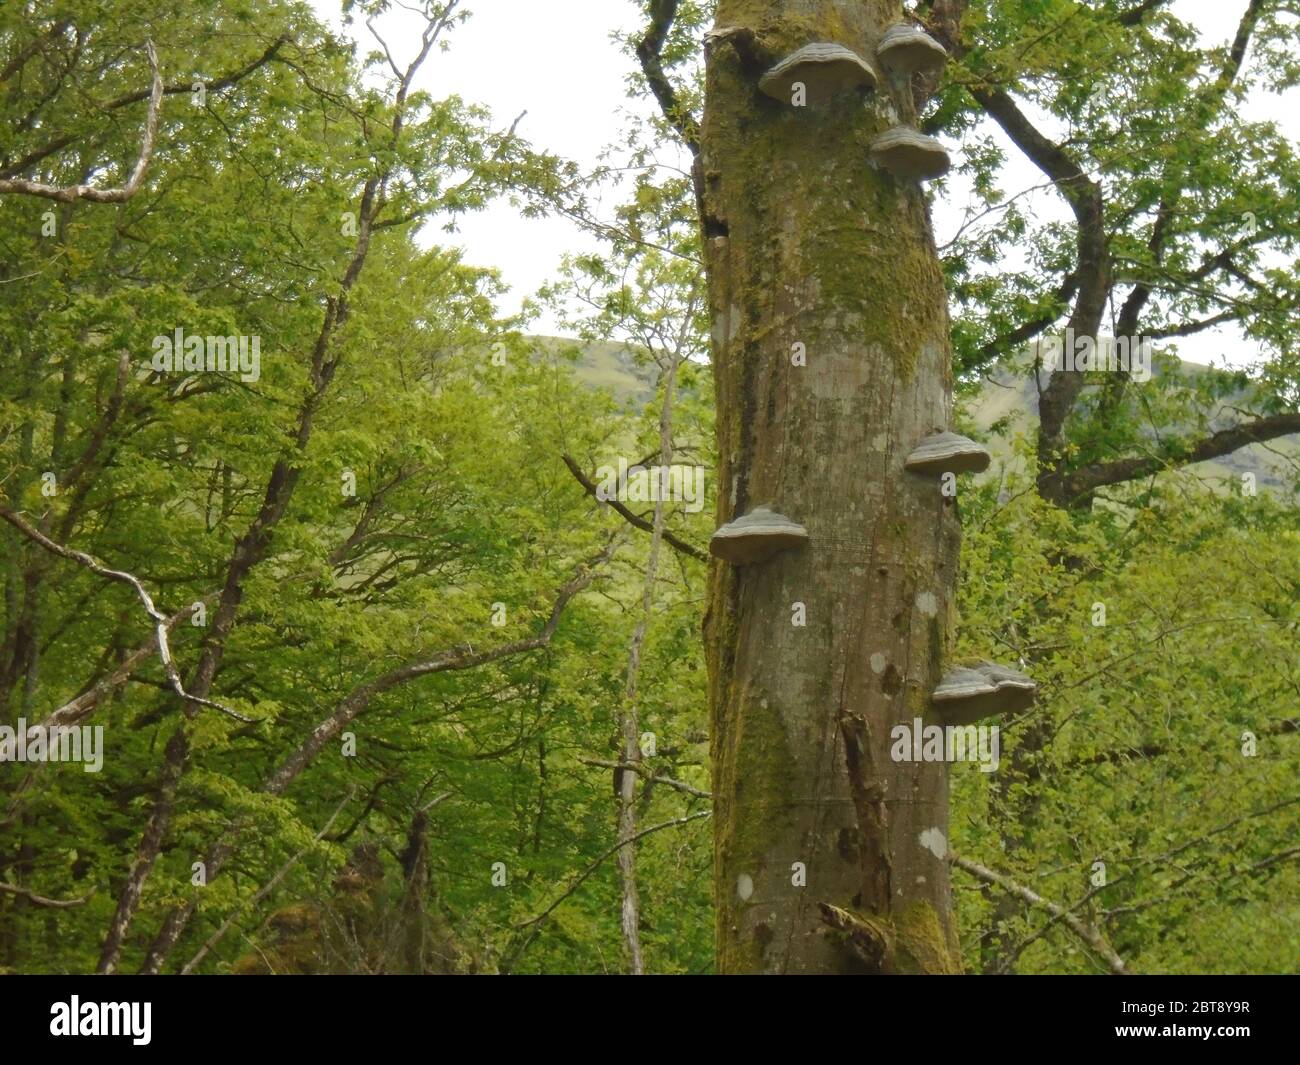 Champignon de l'hof/Tinder (Fomes fomentarius) sur un arbre mort sur la route de la montagne écossaise Corbett 'meall an Fhudair' Glen Falloch, Écosse, Royaume-Uni. Banque D'Images